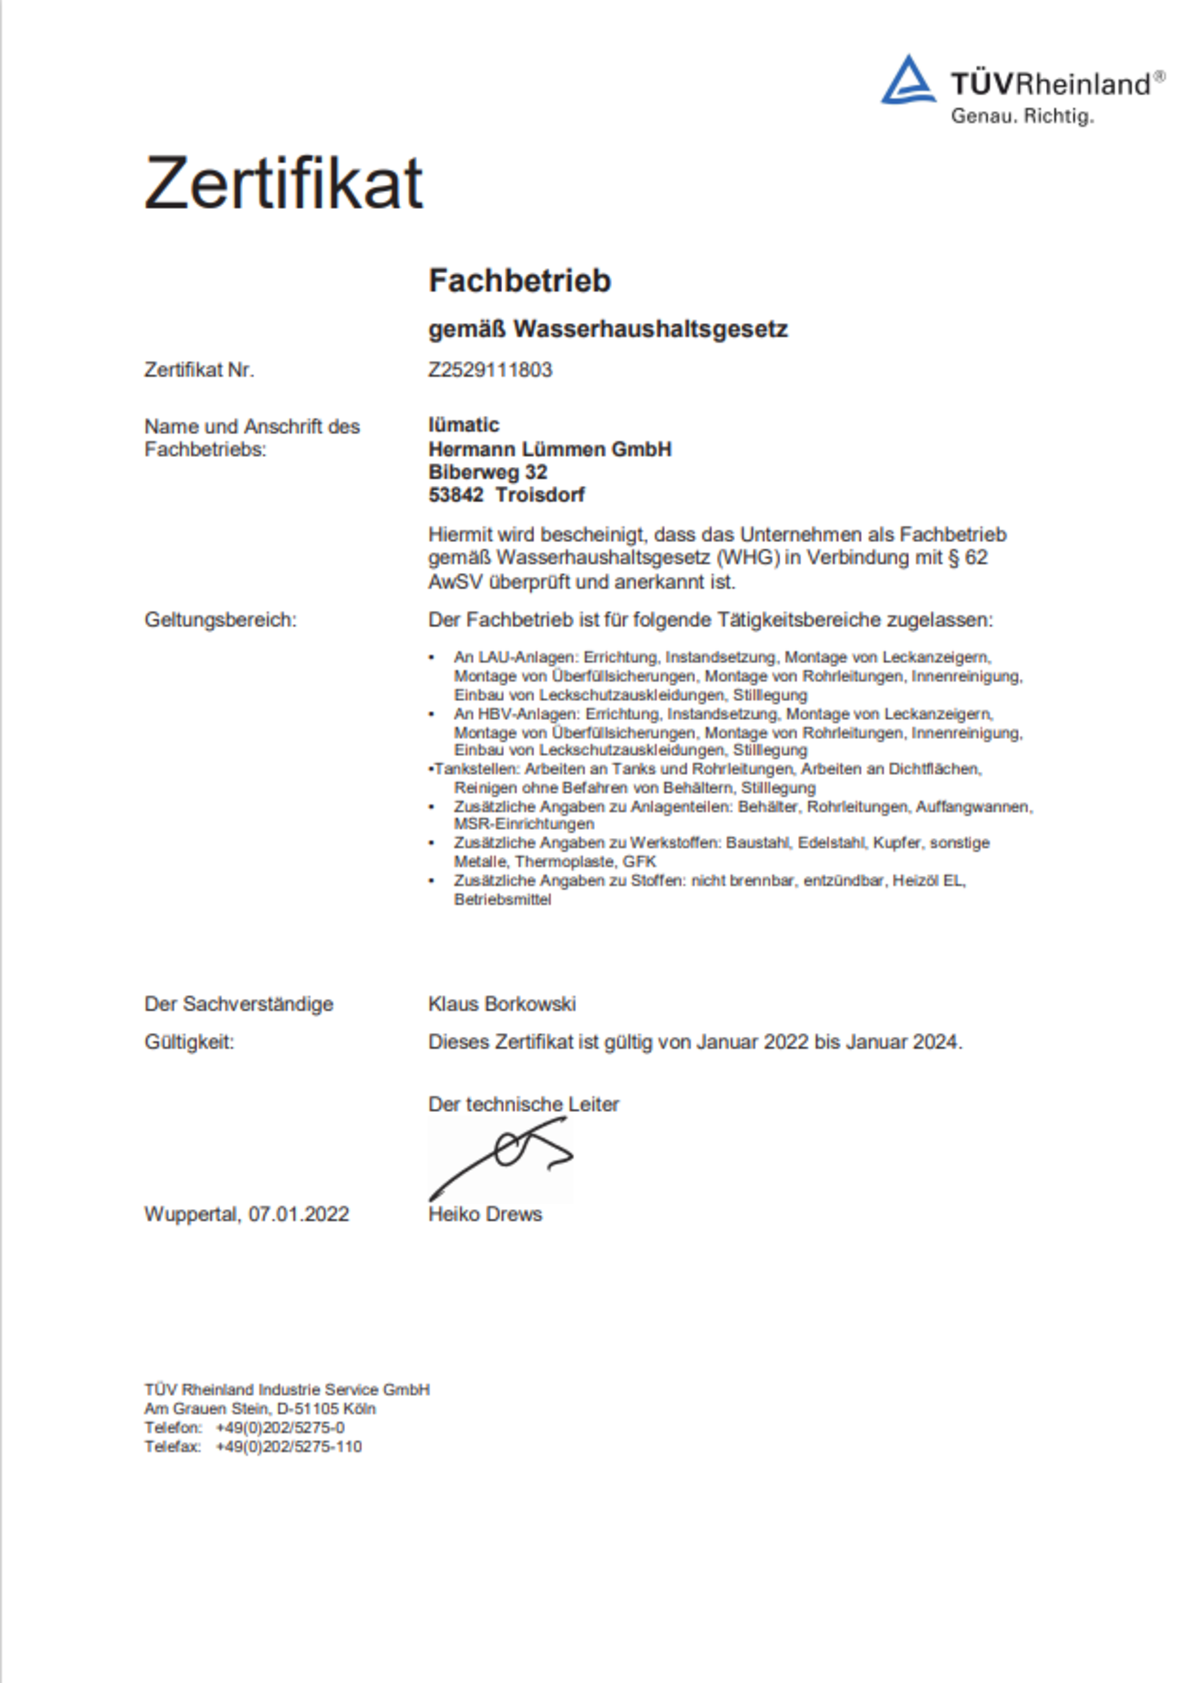 Zertifikat für Lümatic: Fachbetrieb gemäß Wasserhaushaltsgesetz